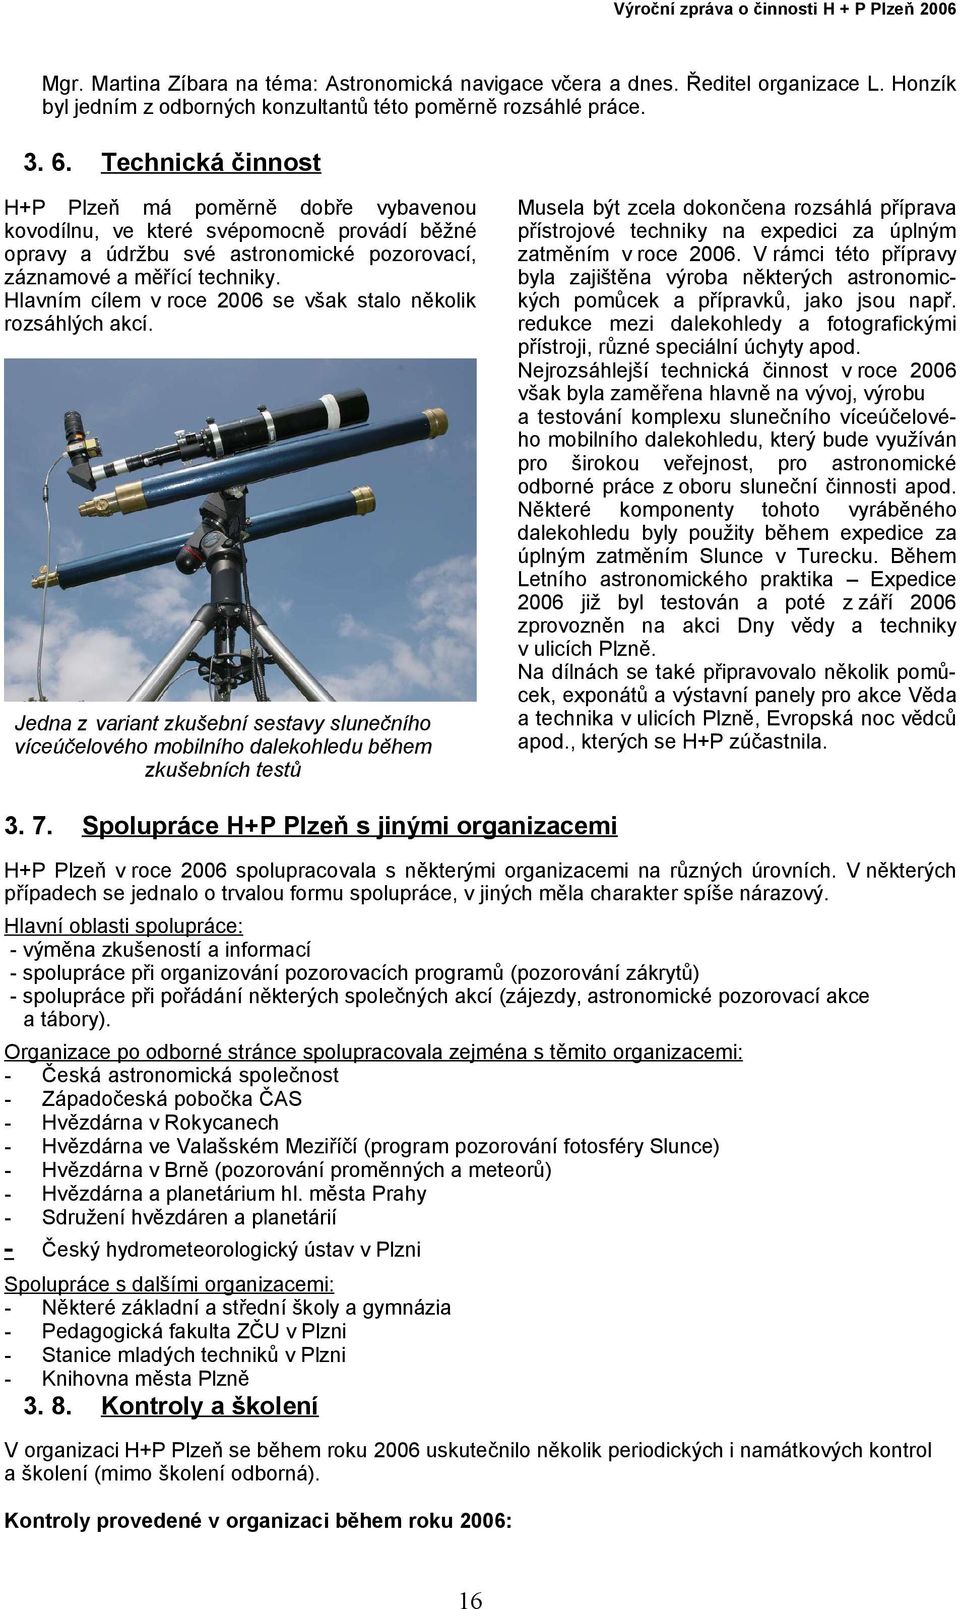 Hlavním cílem v roce 2006 se však stalo několik rozsáhlých akcí. Jedna z variant zkušební sestavy slunečního víceúčelového mobilního dalekohledu během zkušebních testů 3. 7.